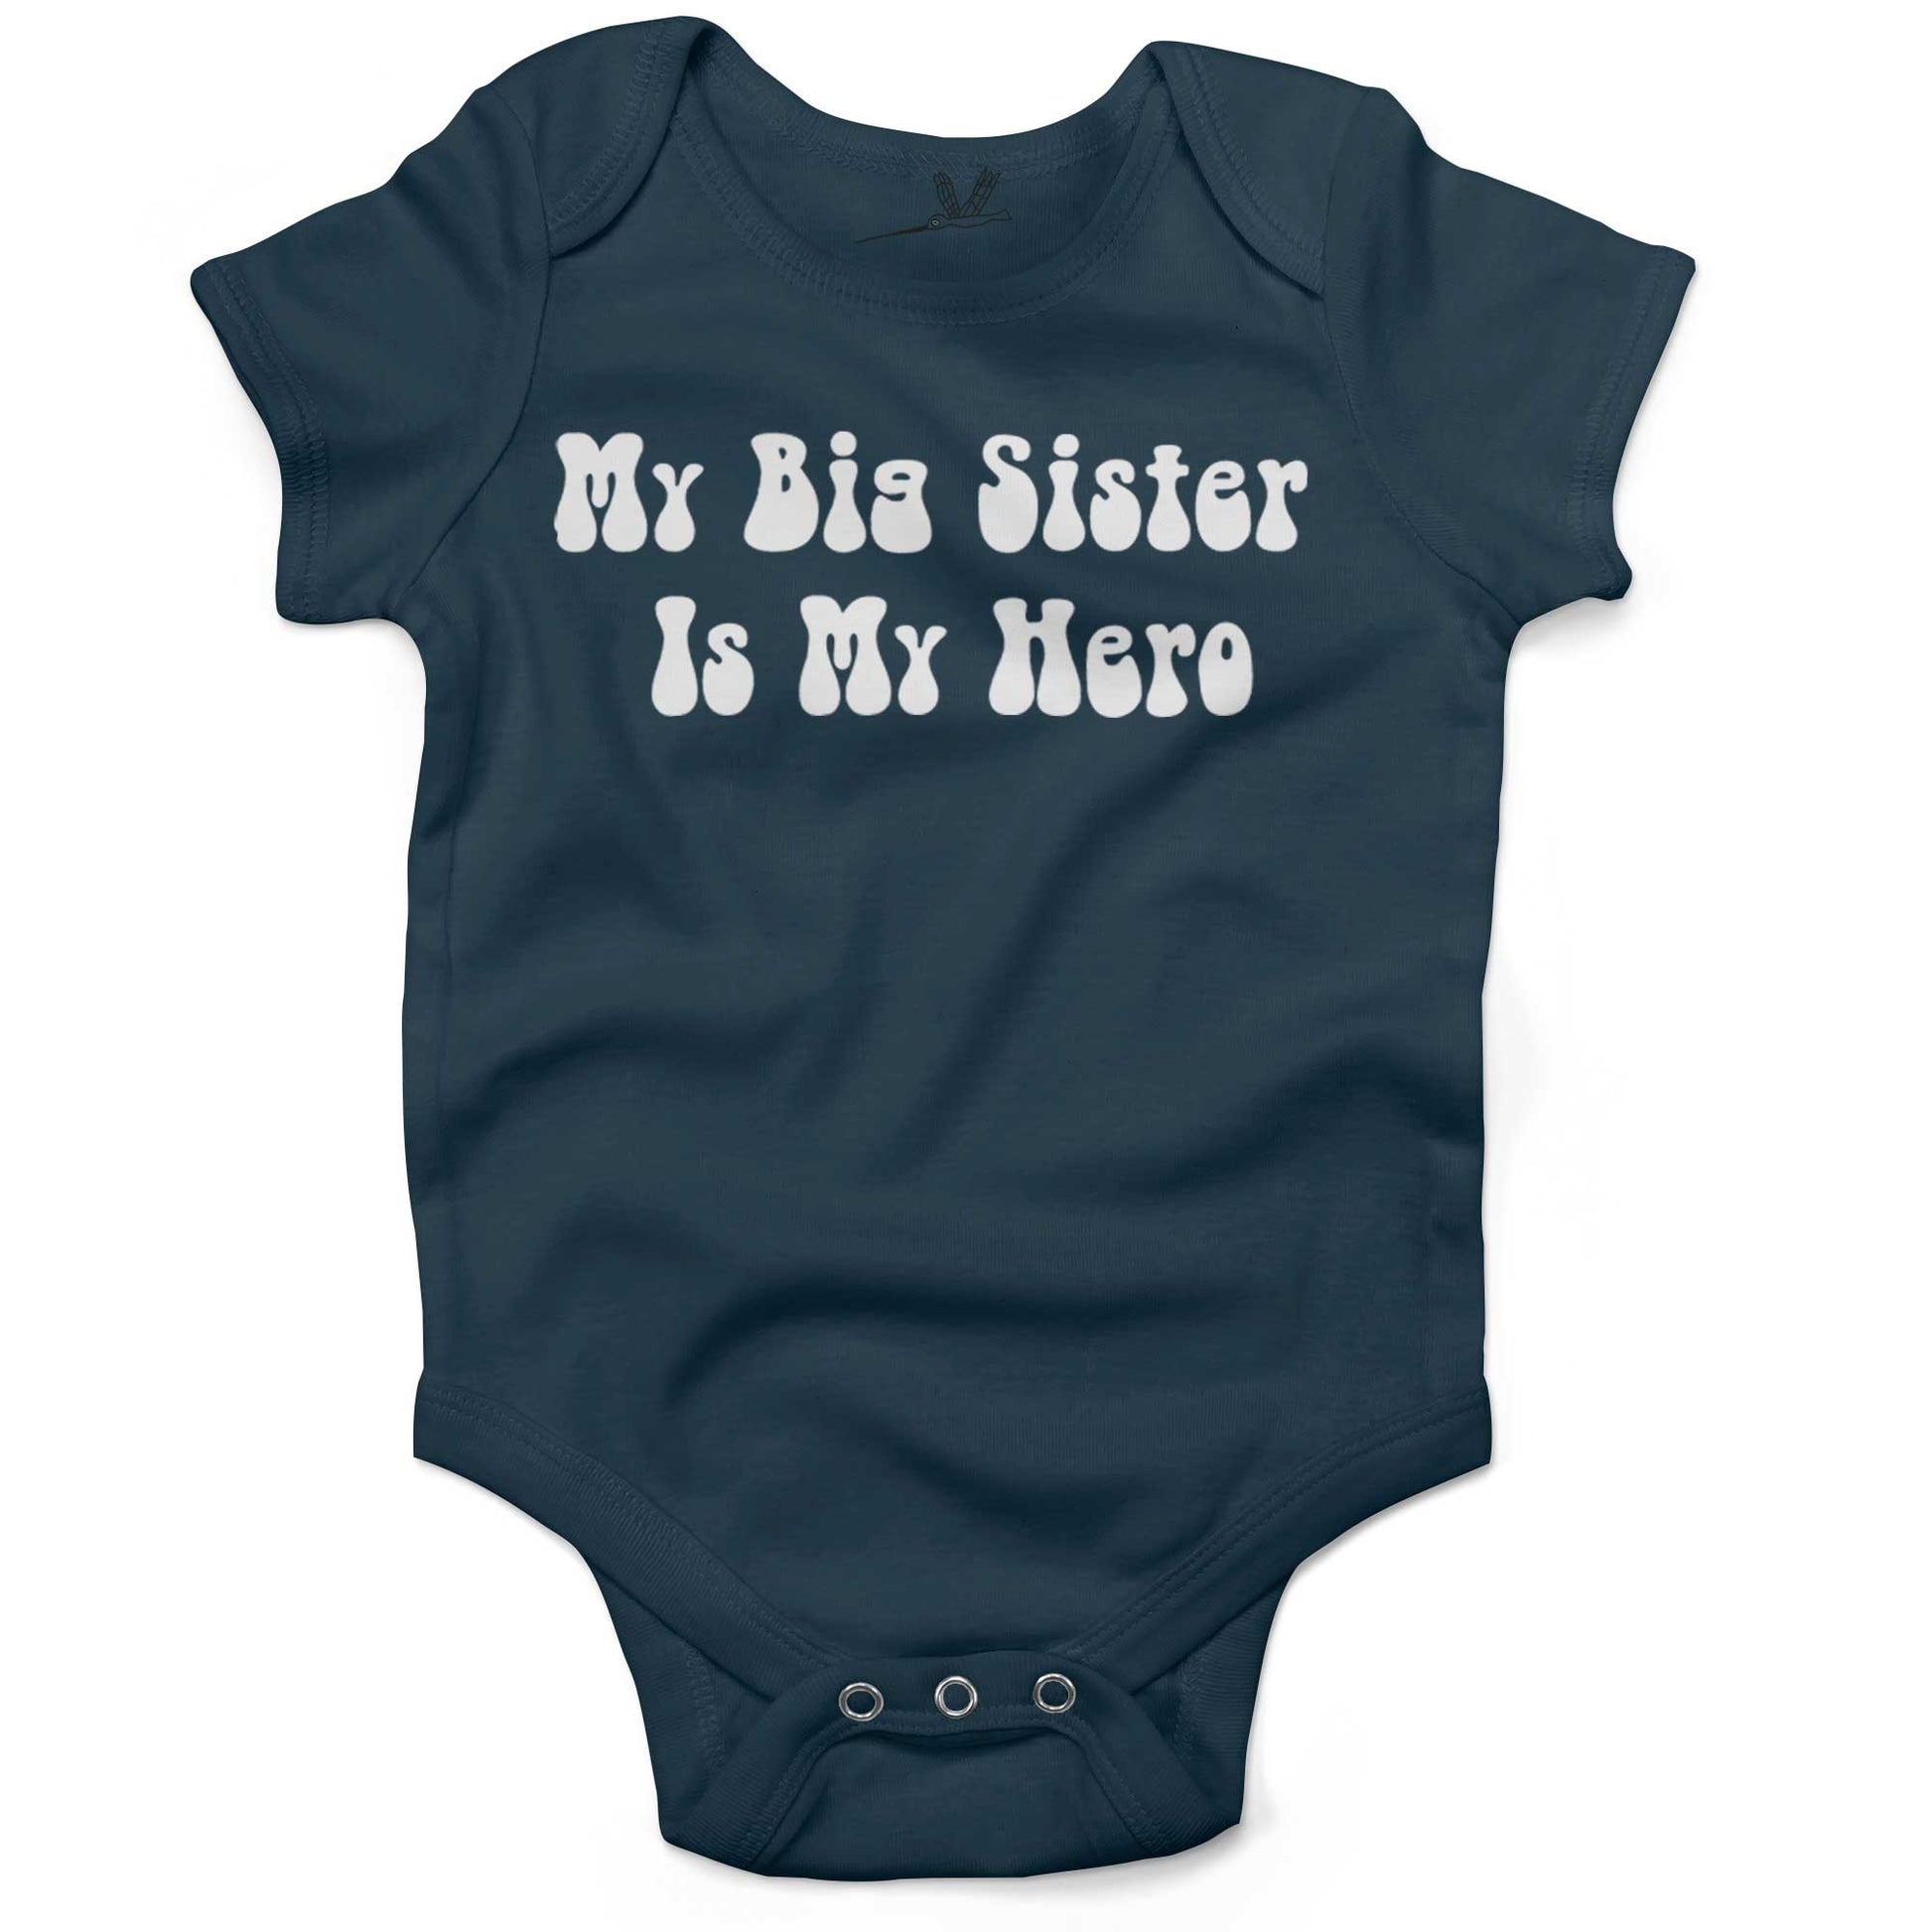 My Big Sister Is My Hero Infant Bodysuit or Raglan Tee-Organic Pacific Ocean-3-6 months